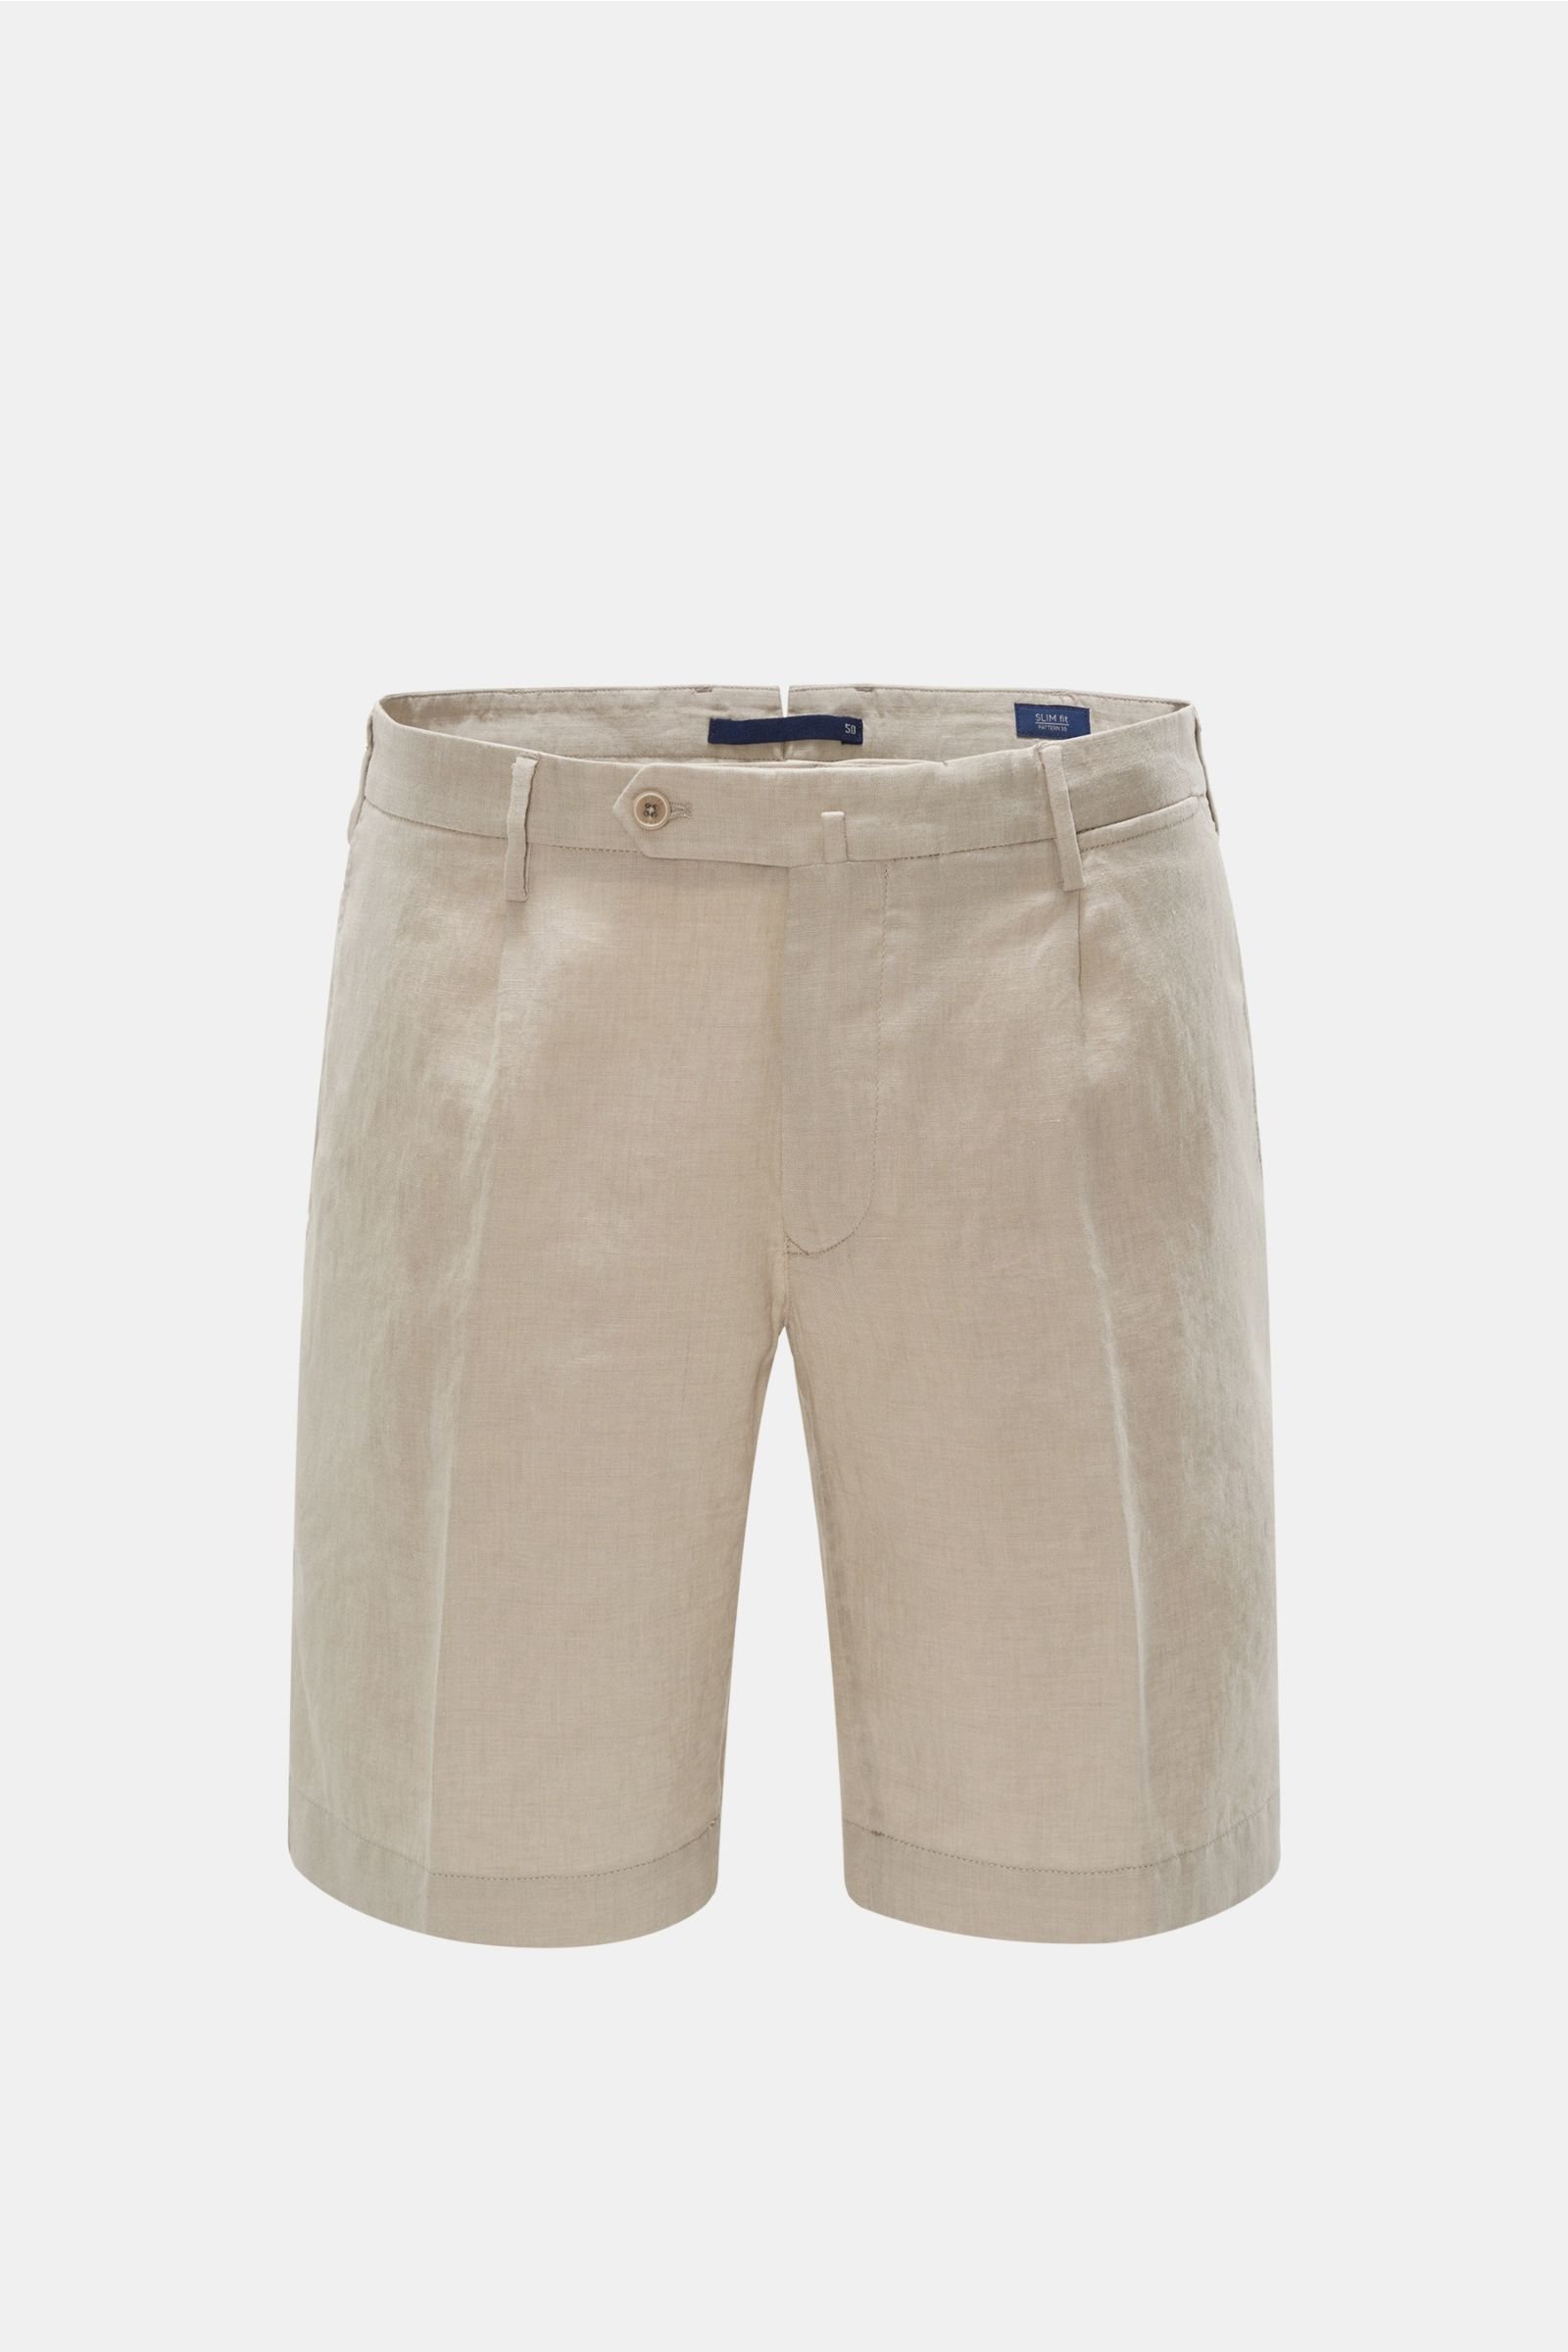 Leinen-Shorts 'Slim Fit' beige